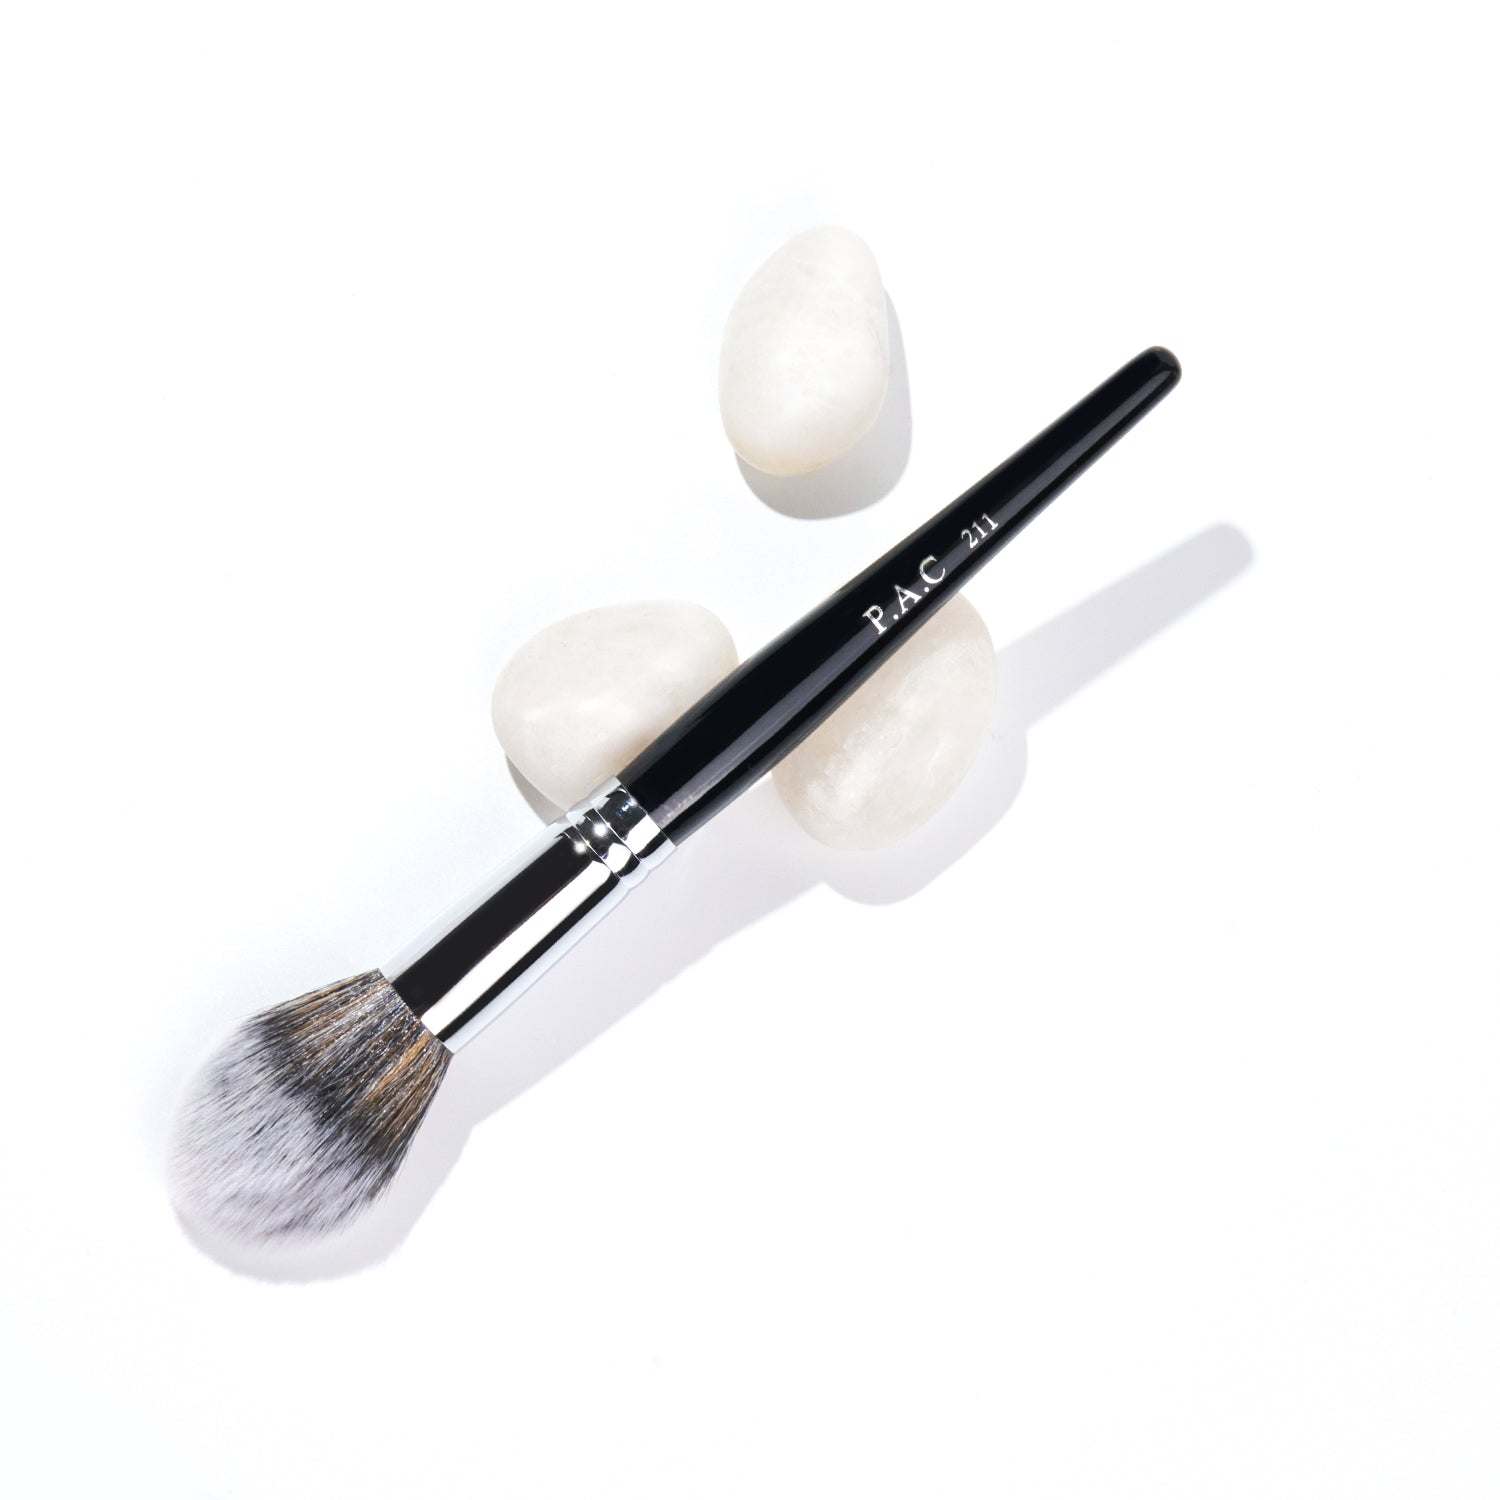 PAC Cosmetics Powder Brush 211